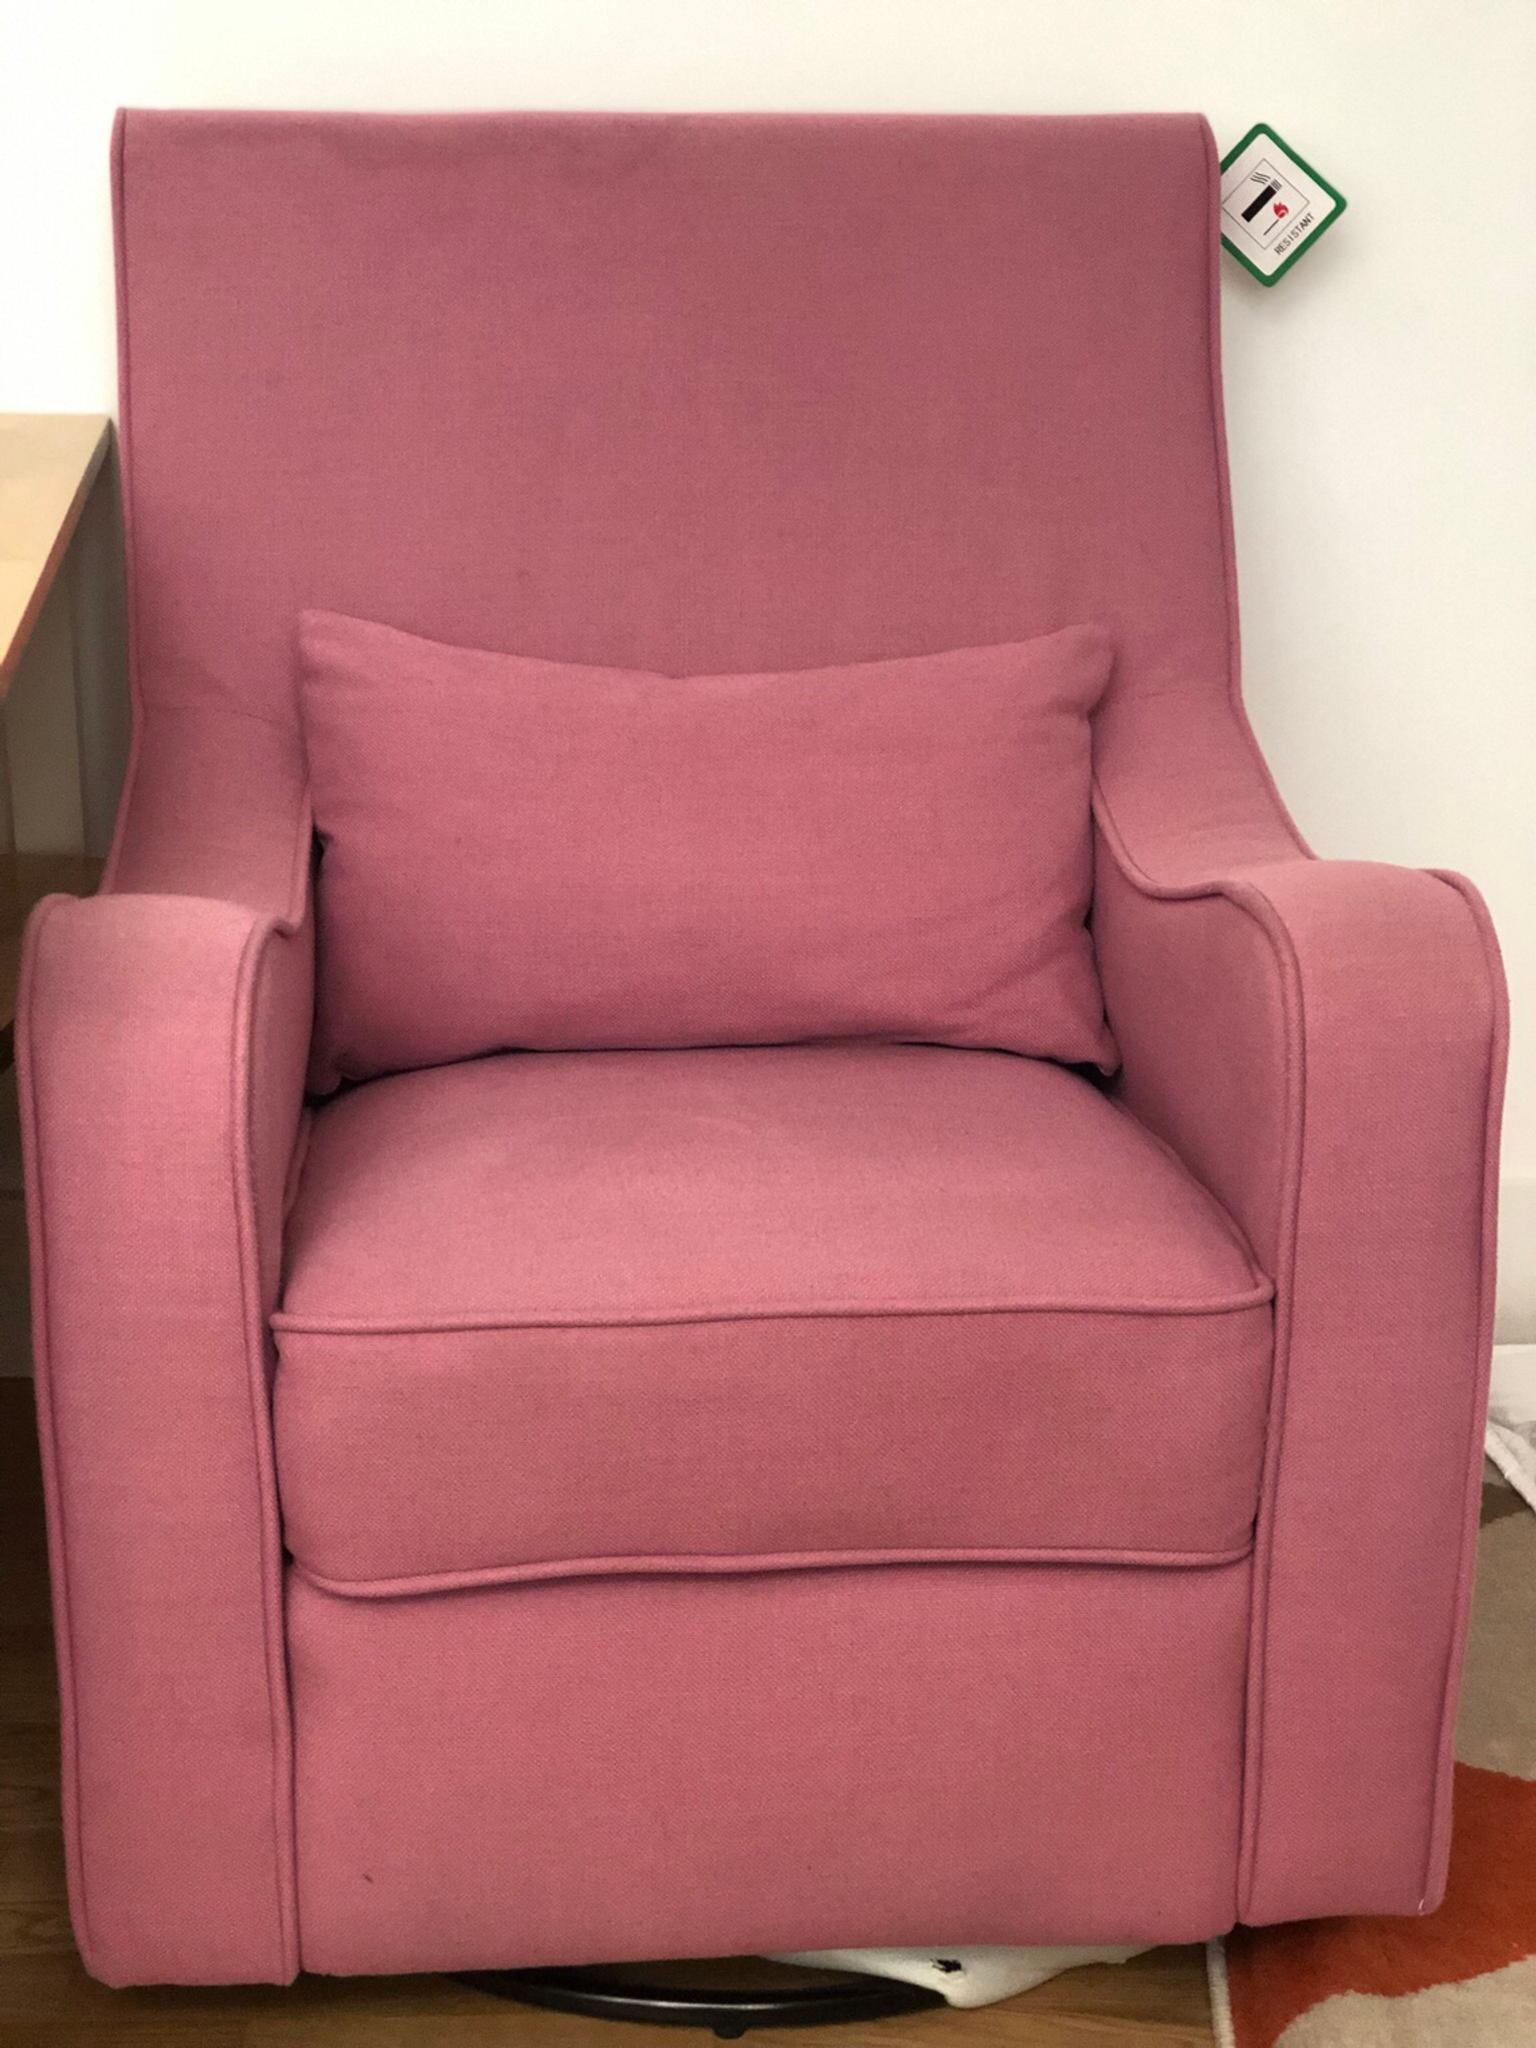 pink nursing chair